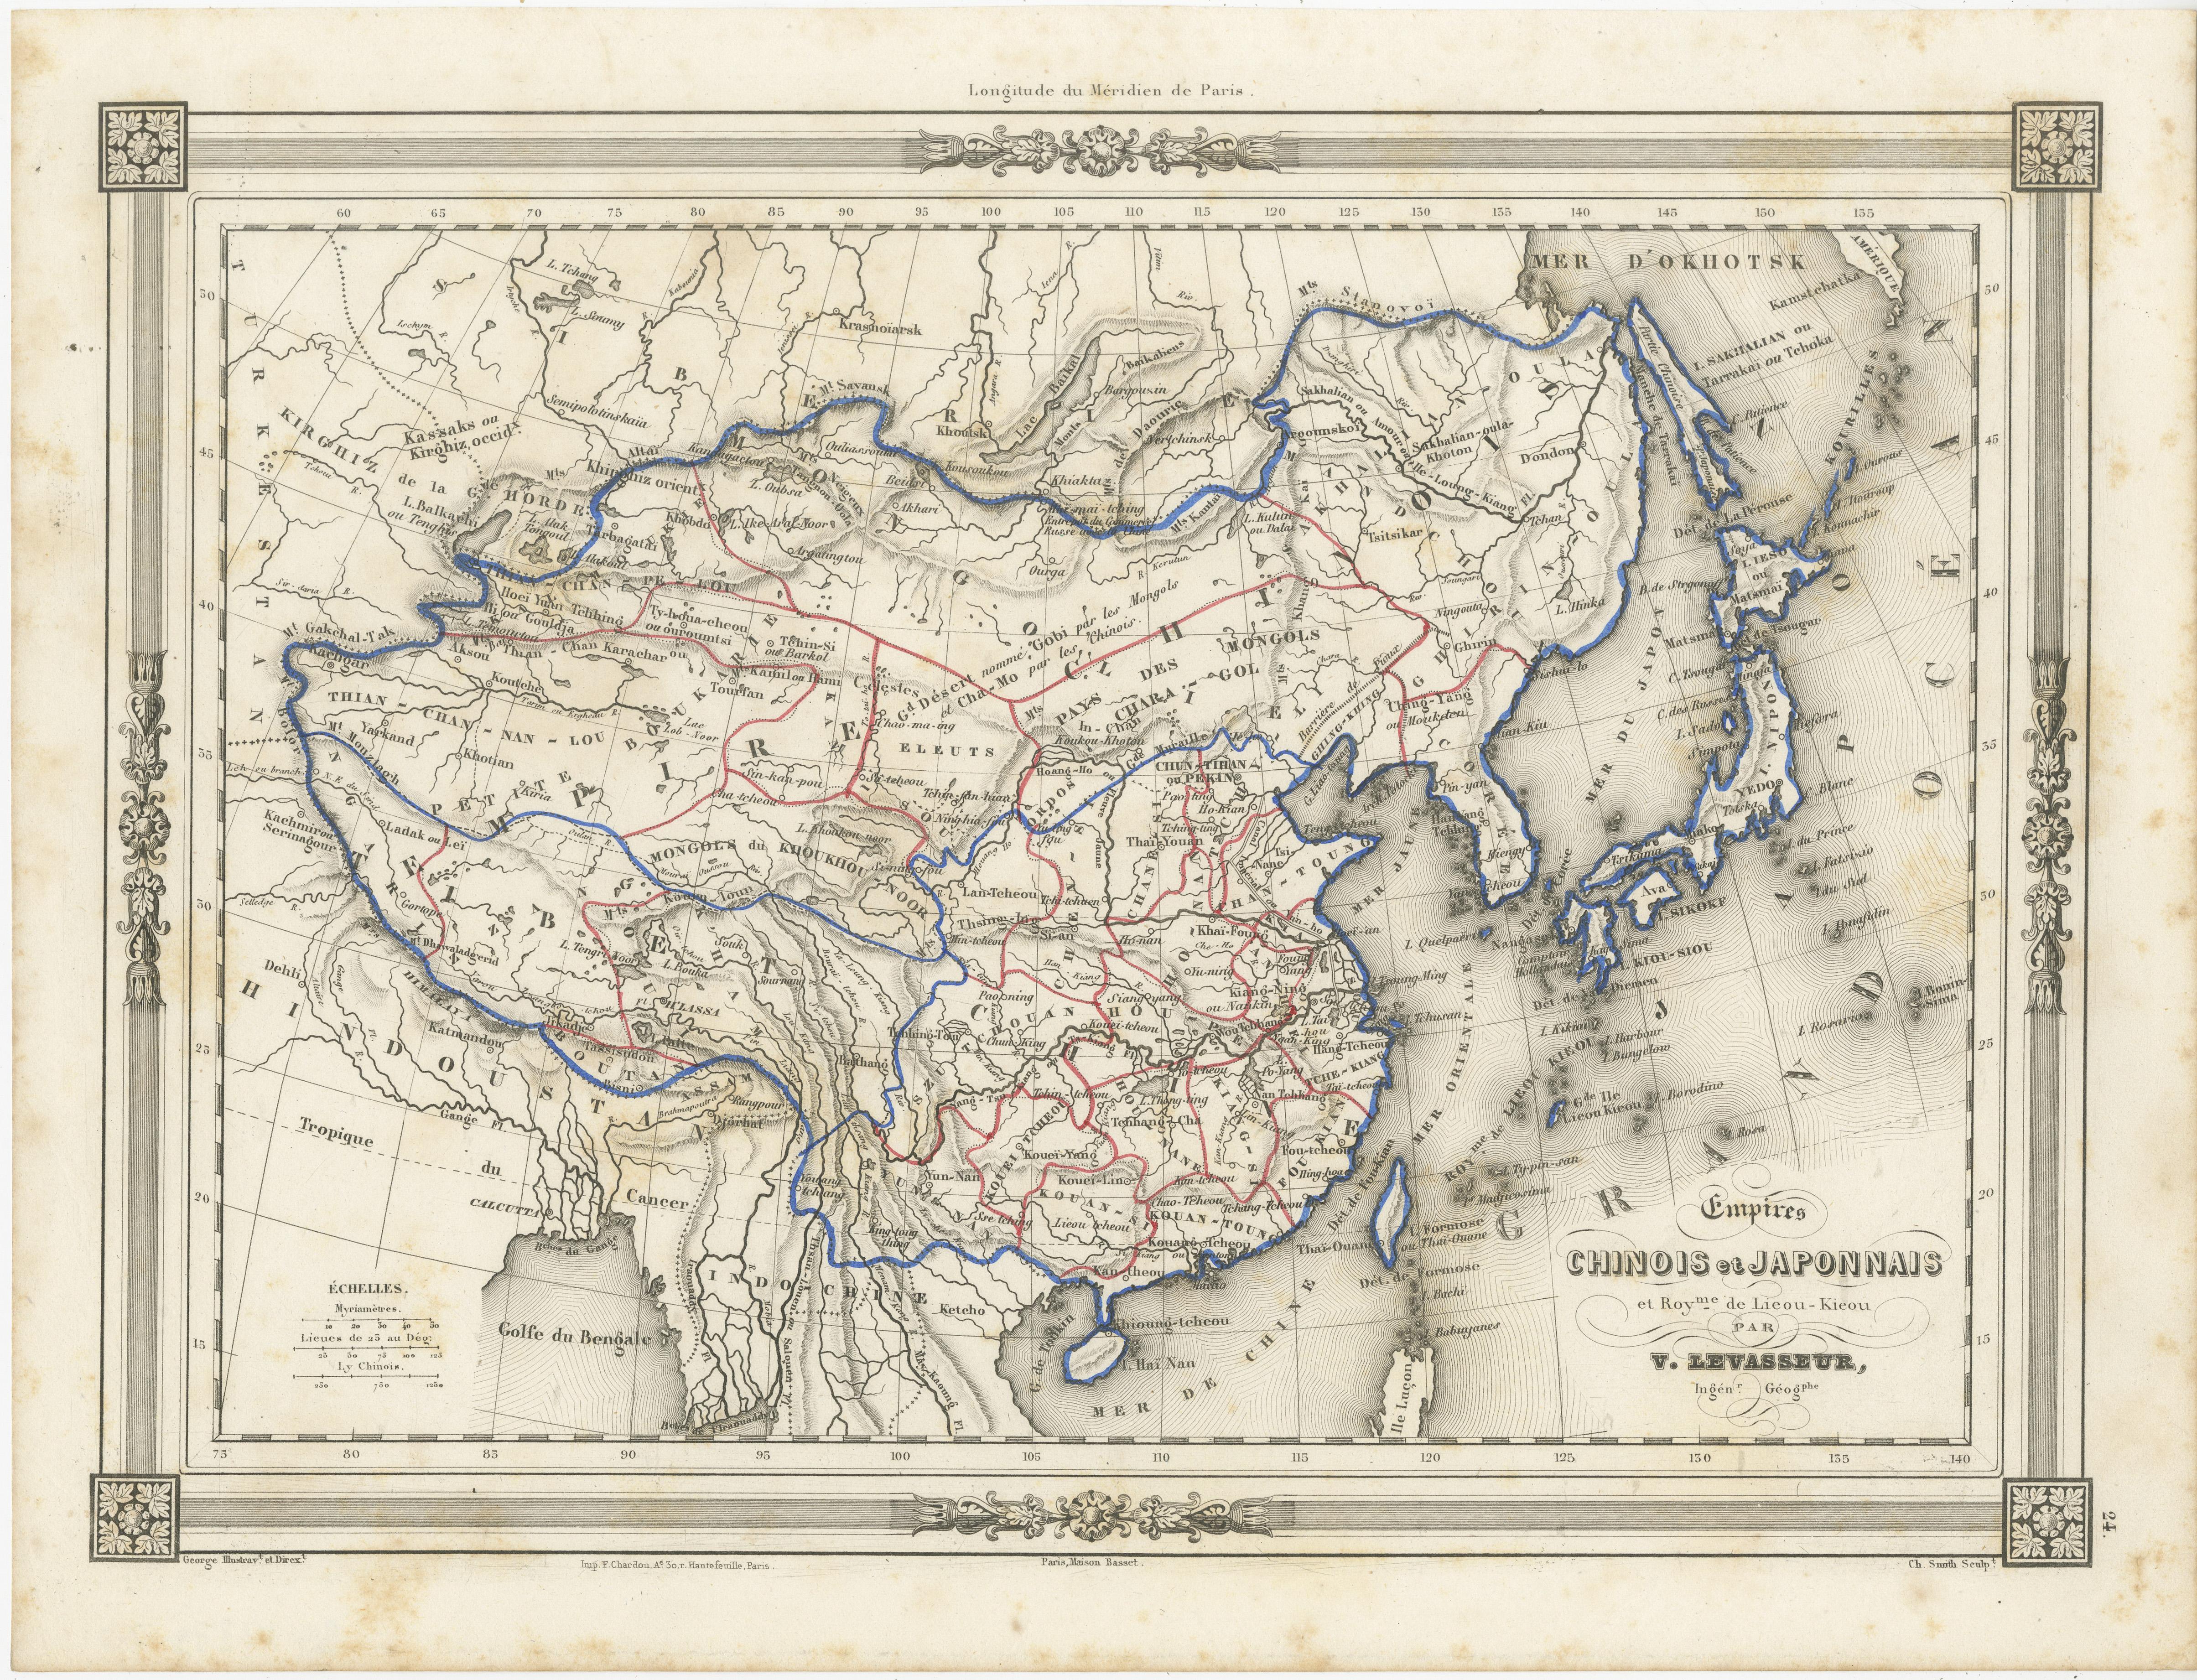 Antique map titled 'Empires Chinois et Japonnais'. Attractive map of China and Japan. This map originates from Maison Basset's 1852 edition of 'Atlas Illustre Destine a l'enseignement de la Geographie elementaire'.